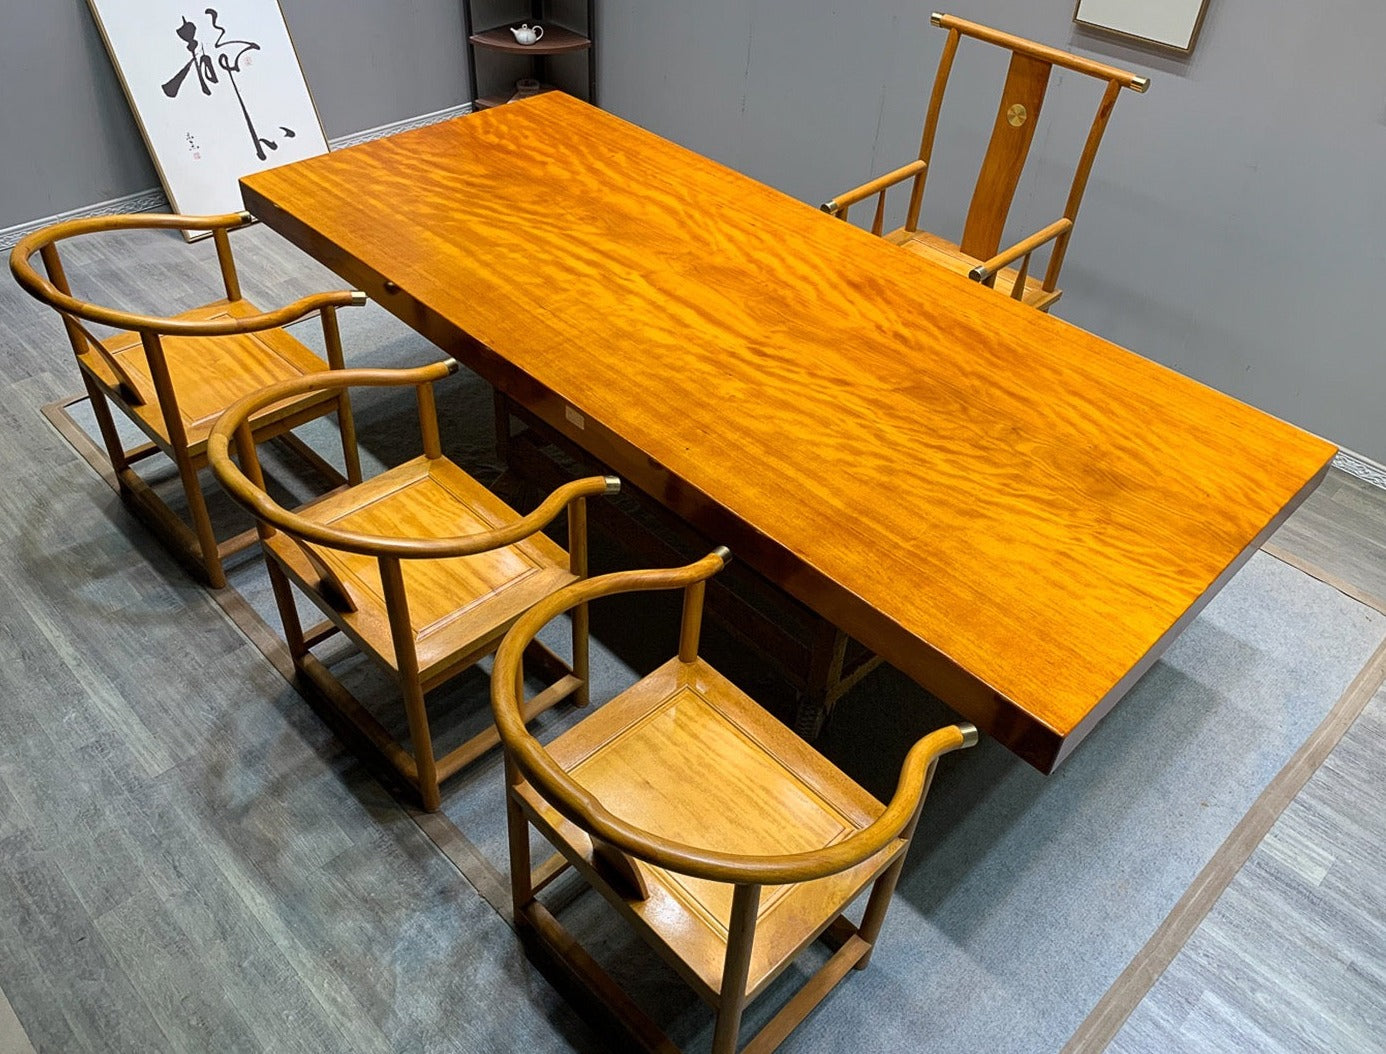 Tavolo con lastra giapponese e Jarrah, tavolo da cucina con lastra di legno